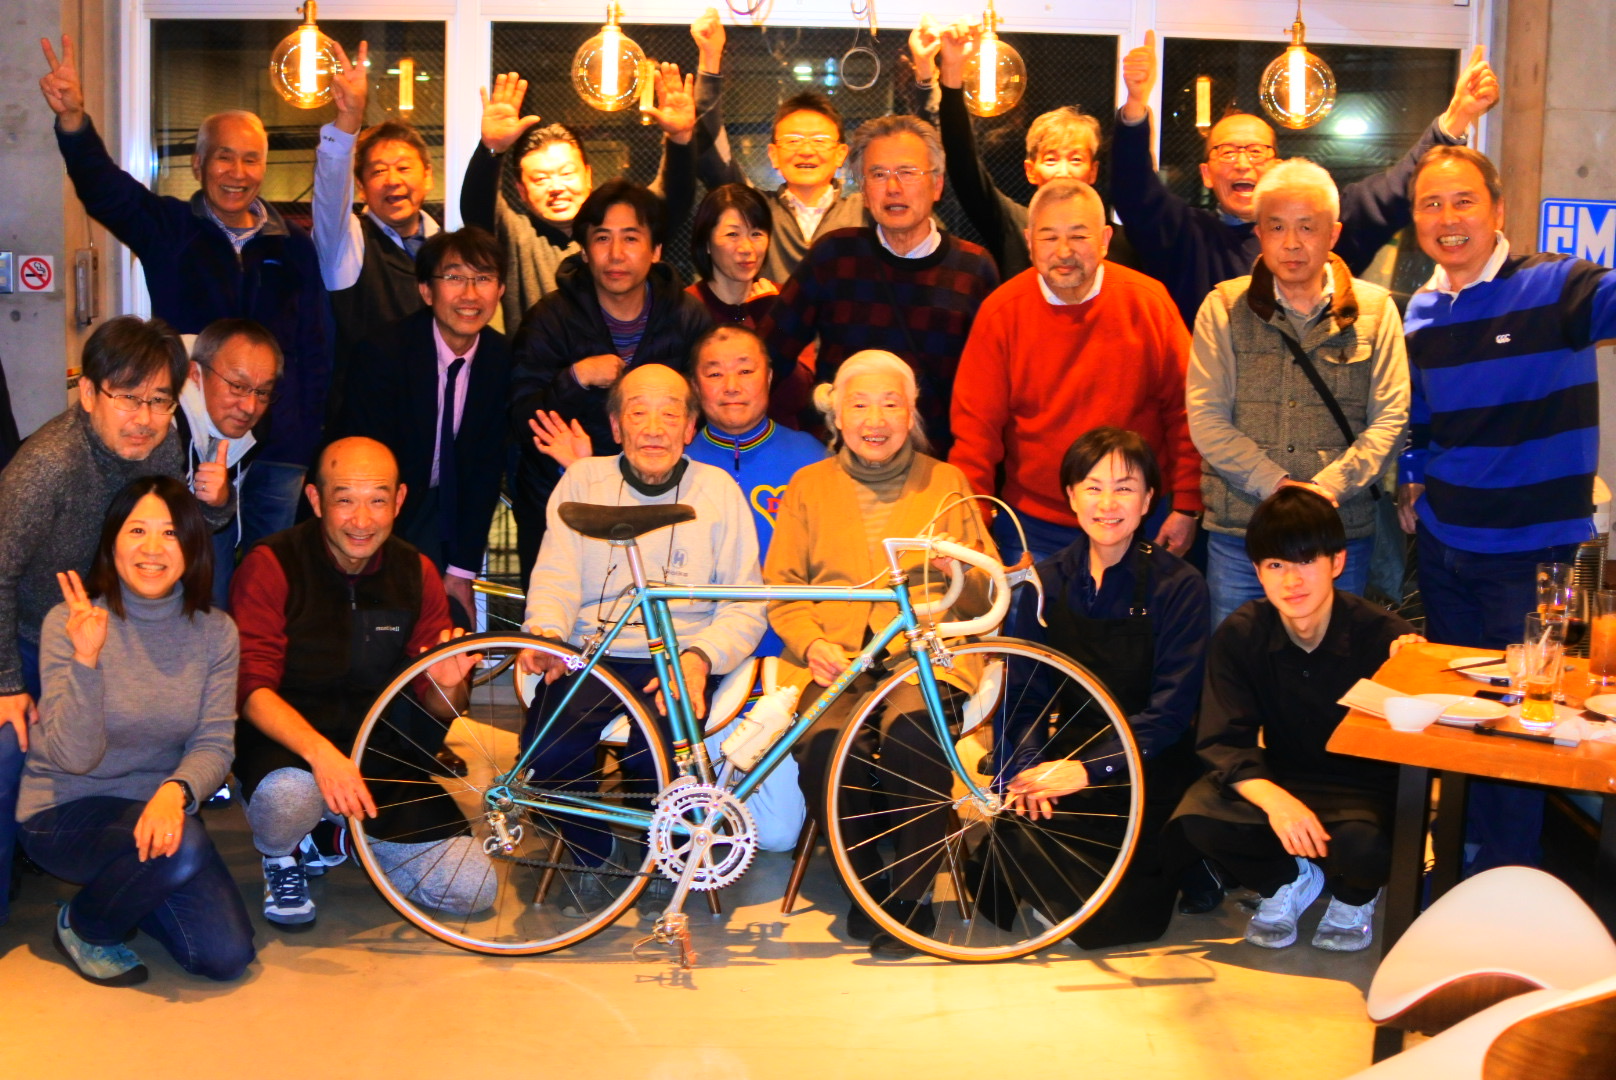 横尾双輪館横尾明氏の卒寿祝賀会に参加しました。